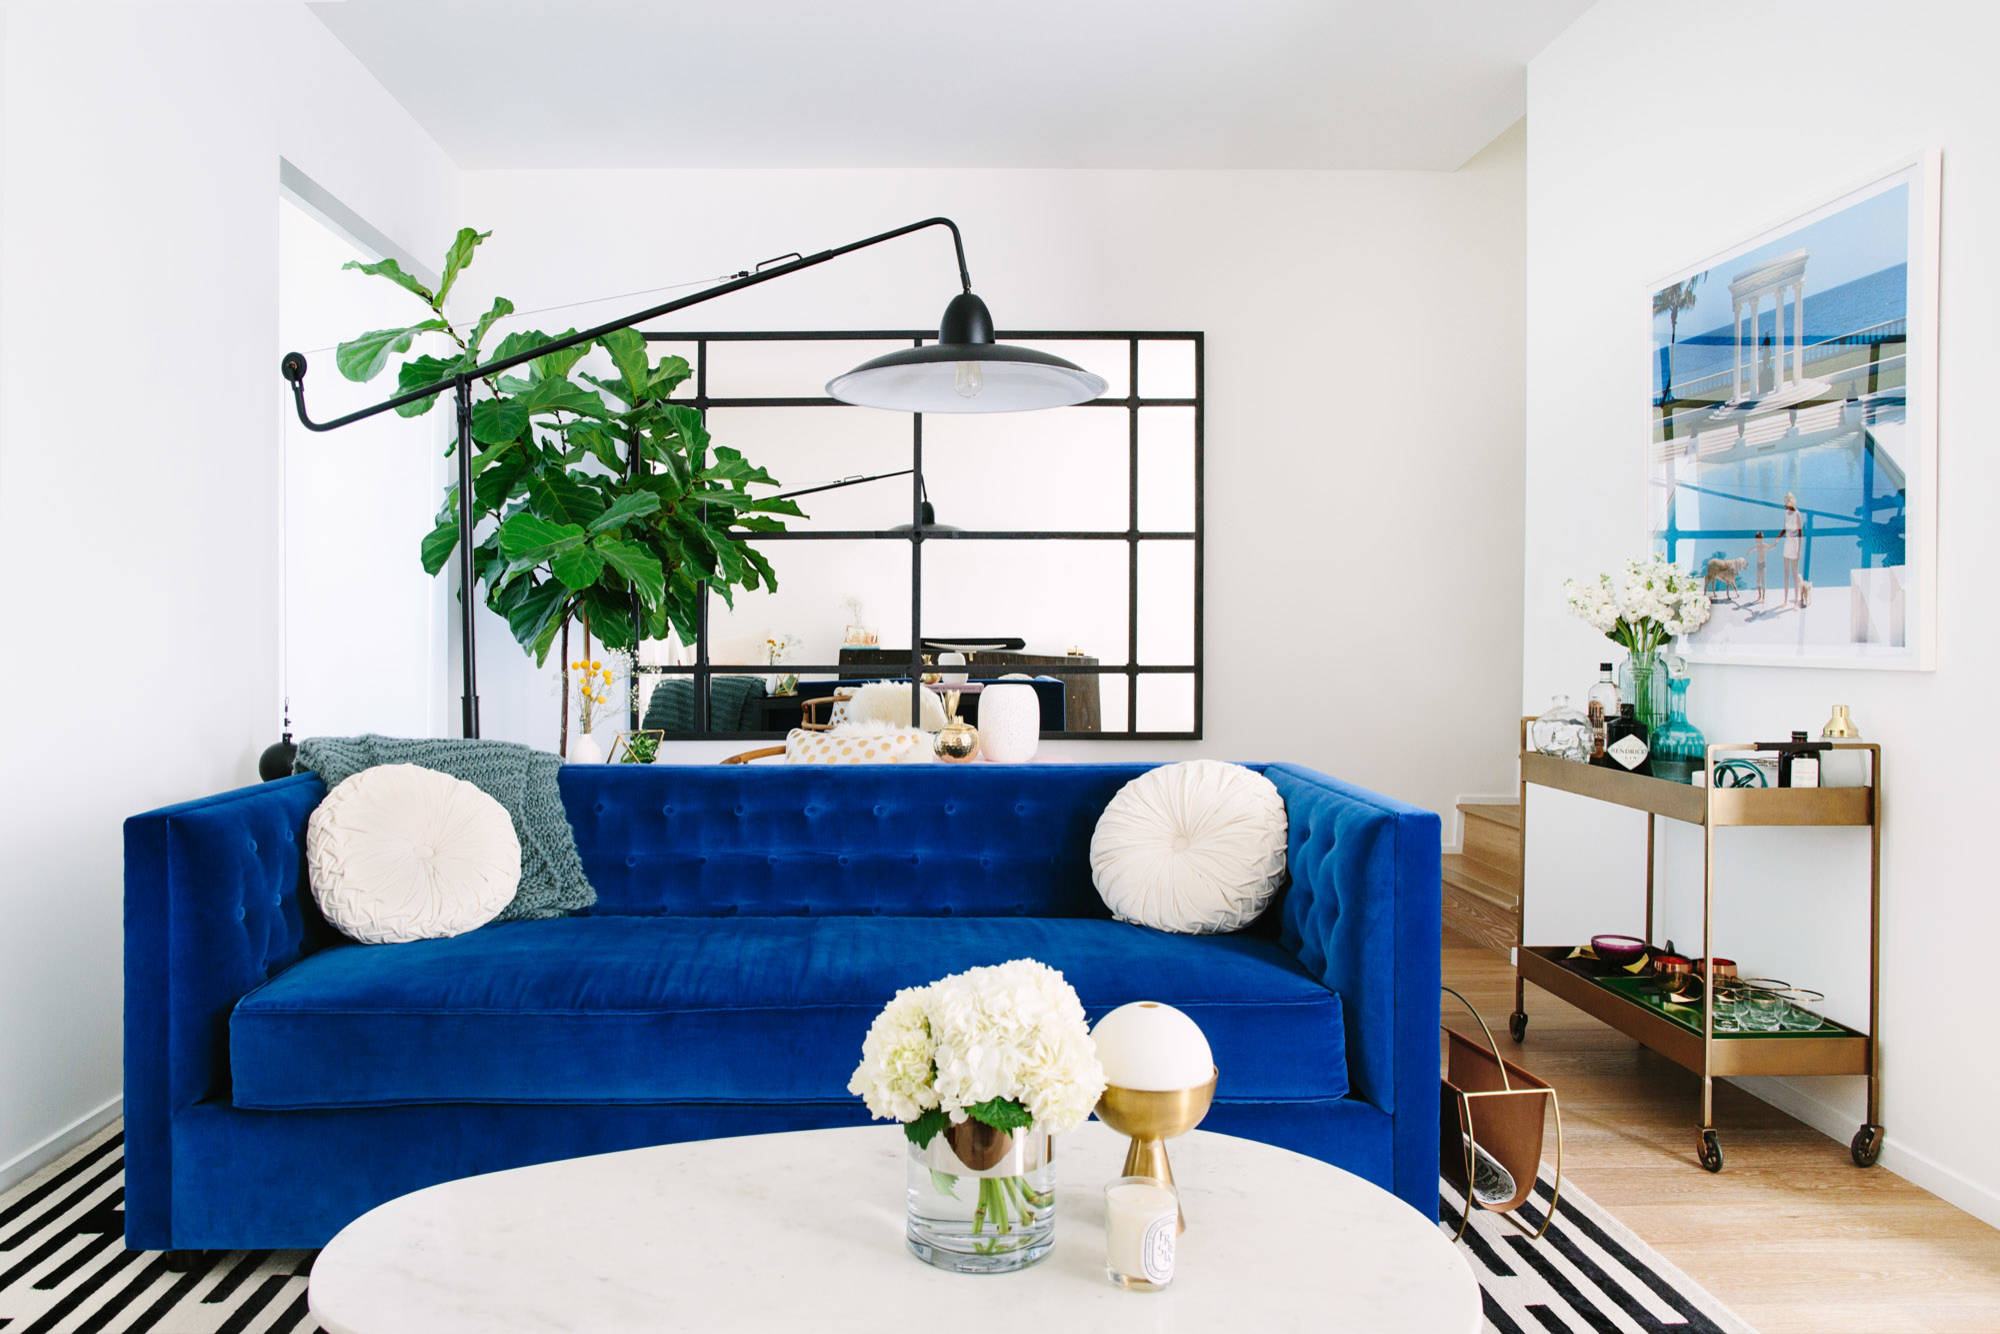 blue velvet couch ideas - photos & ideas | houzz